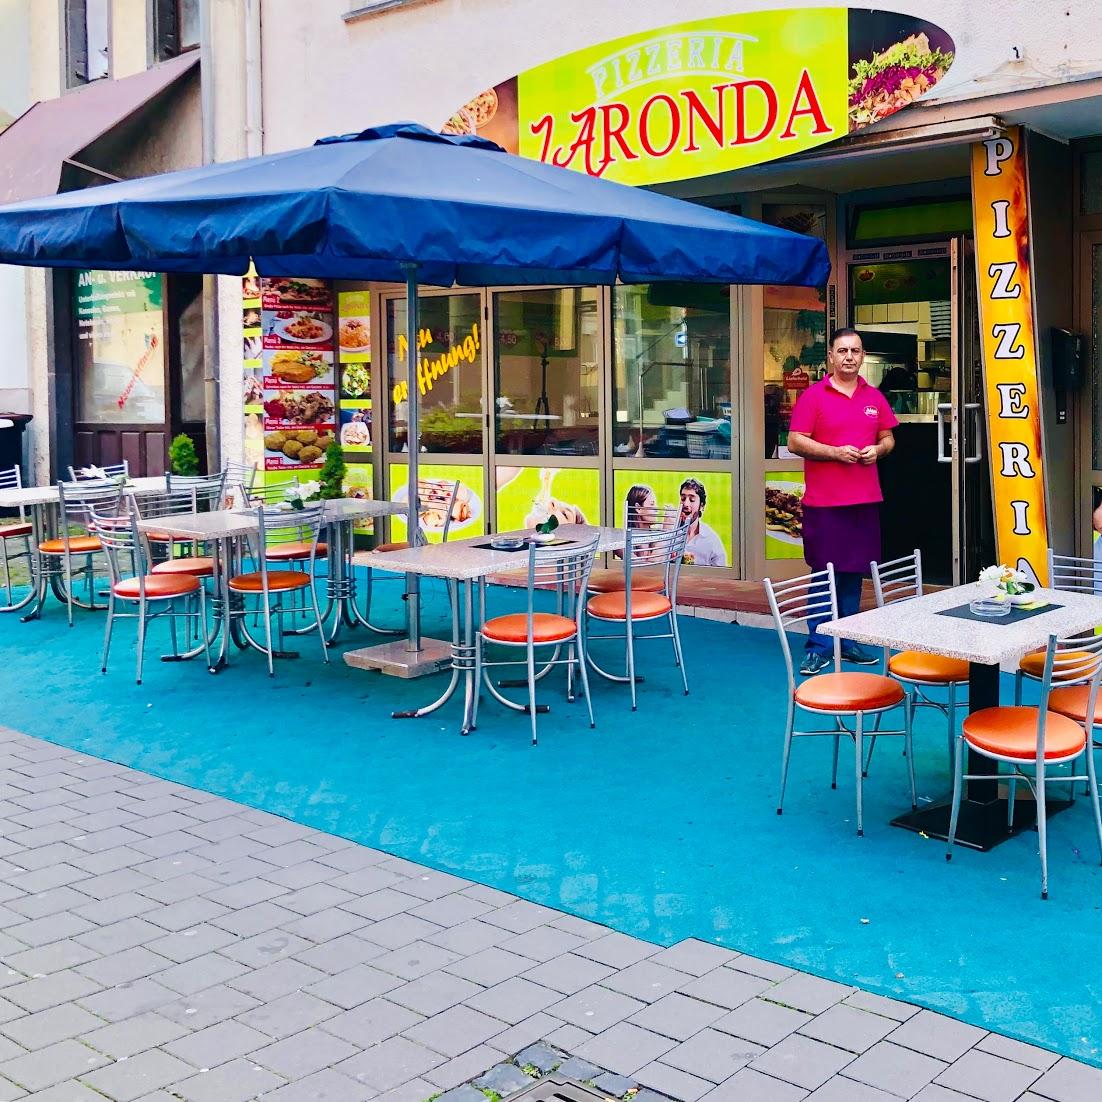 Restaurant "Pizzeria Laronda" in  Mayen